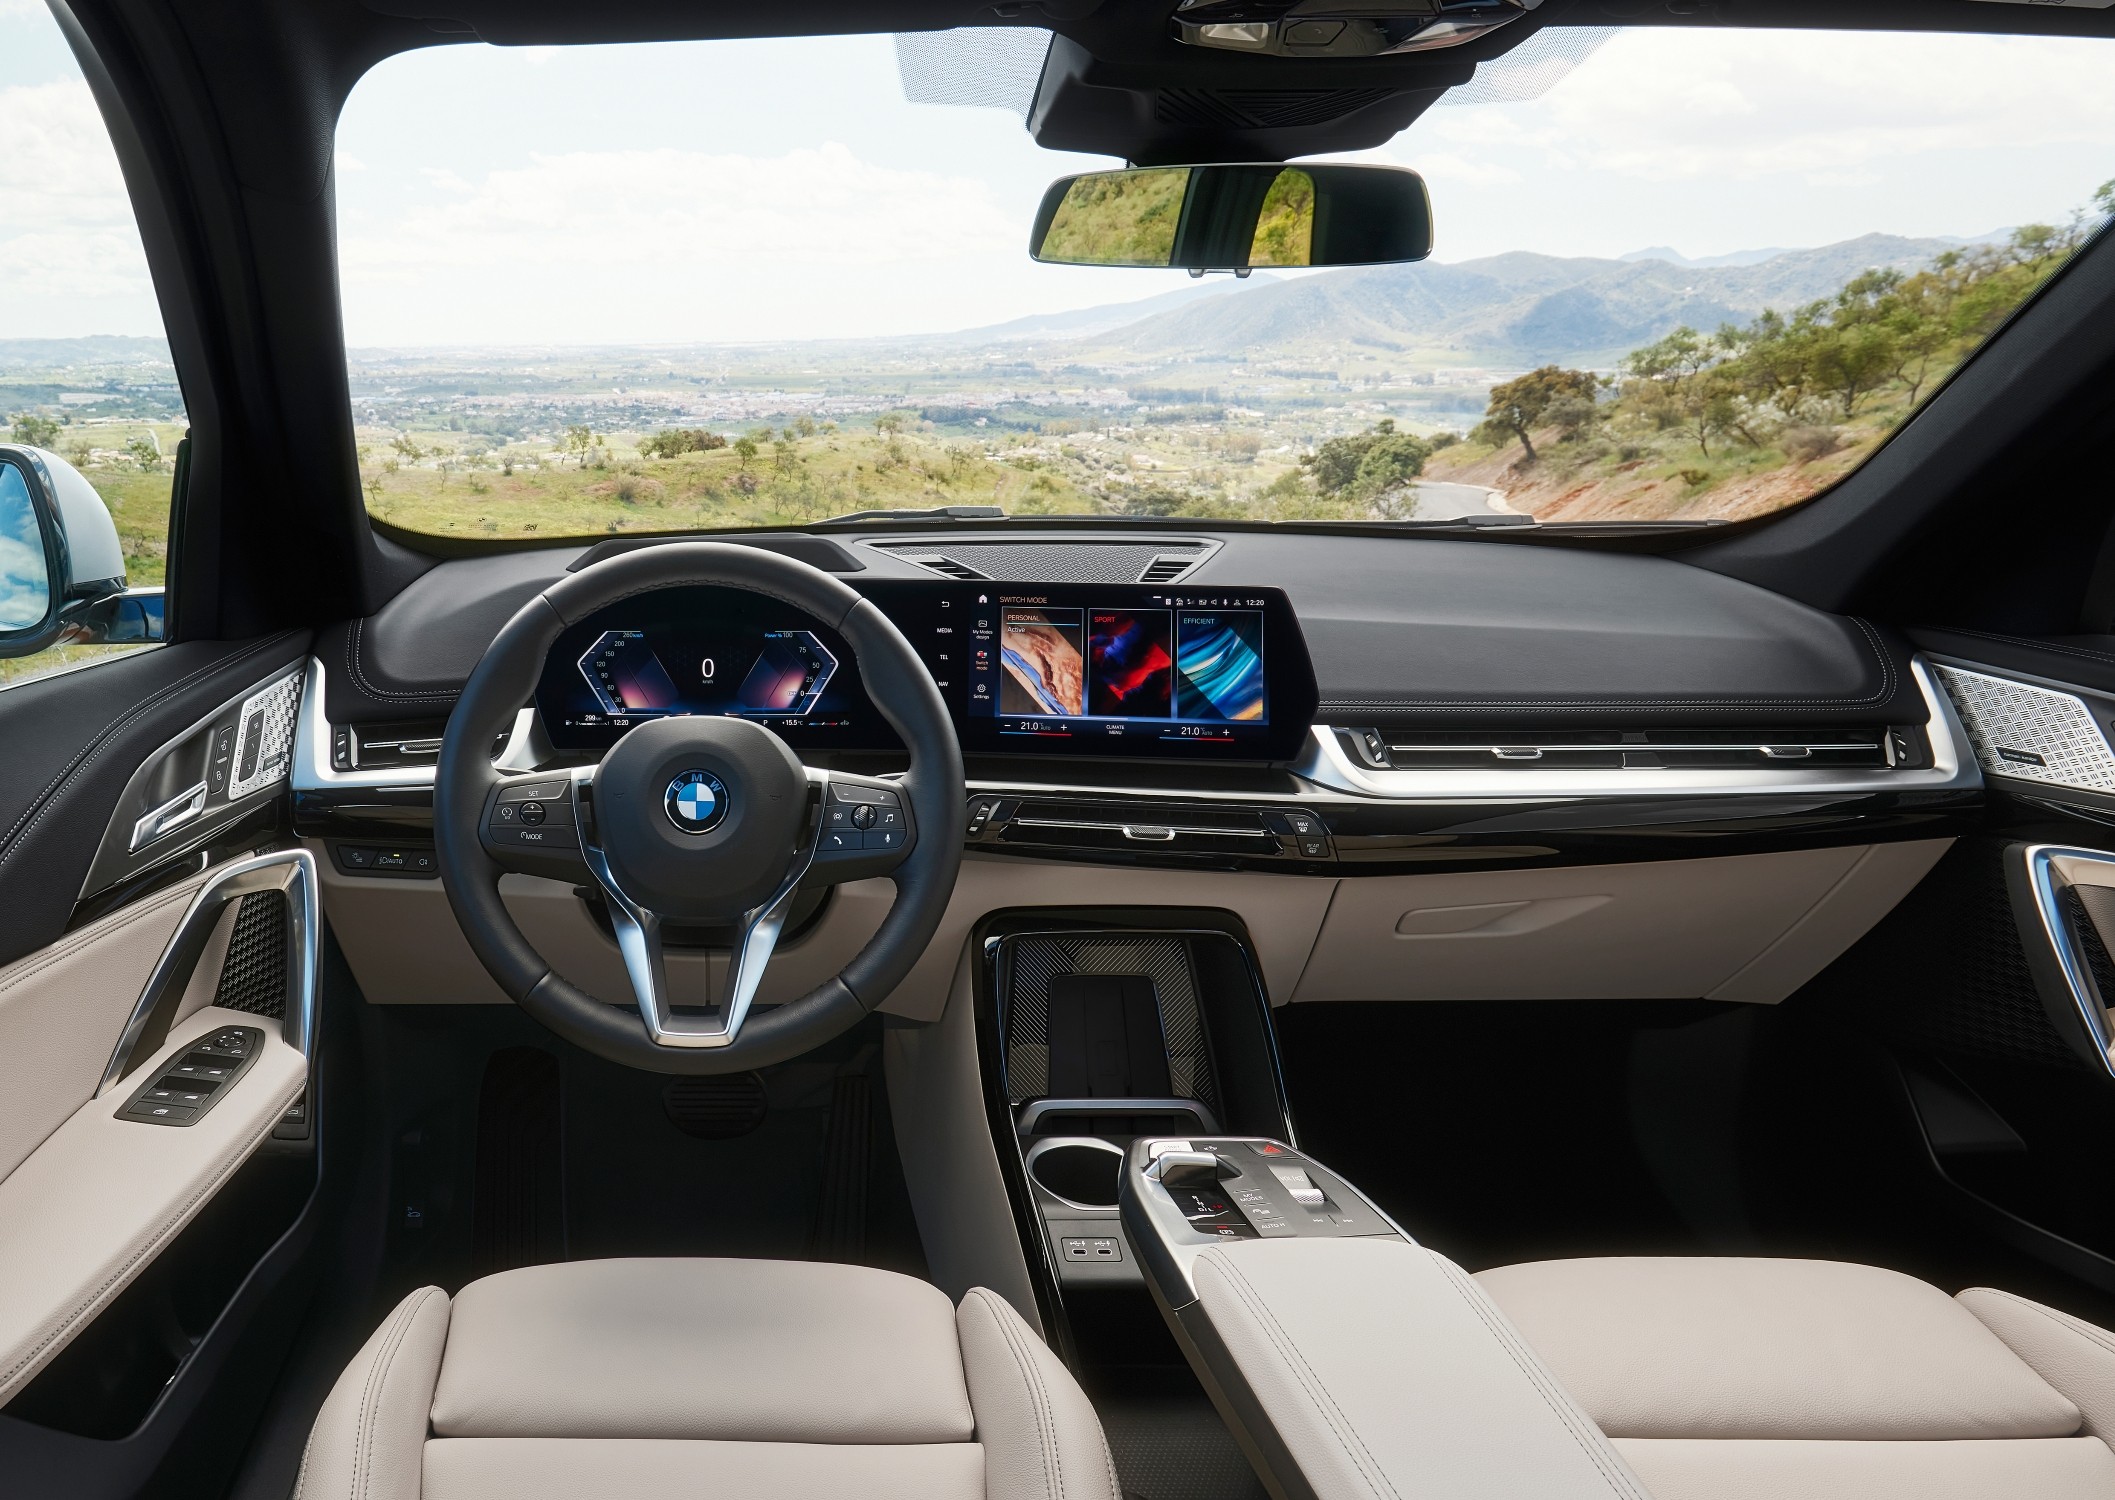 Treća generacija BMW-a X1 - Novi robustan stil s više opreme